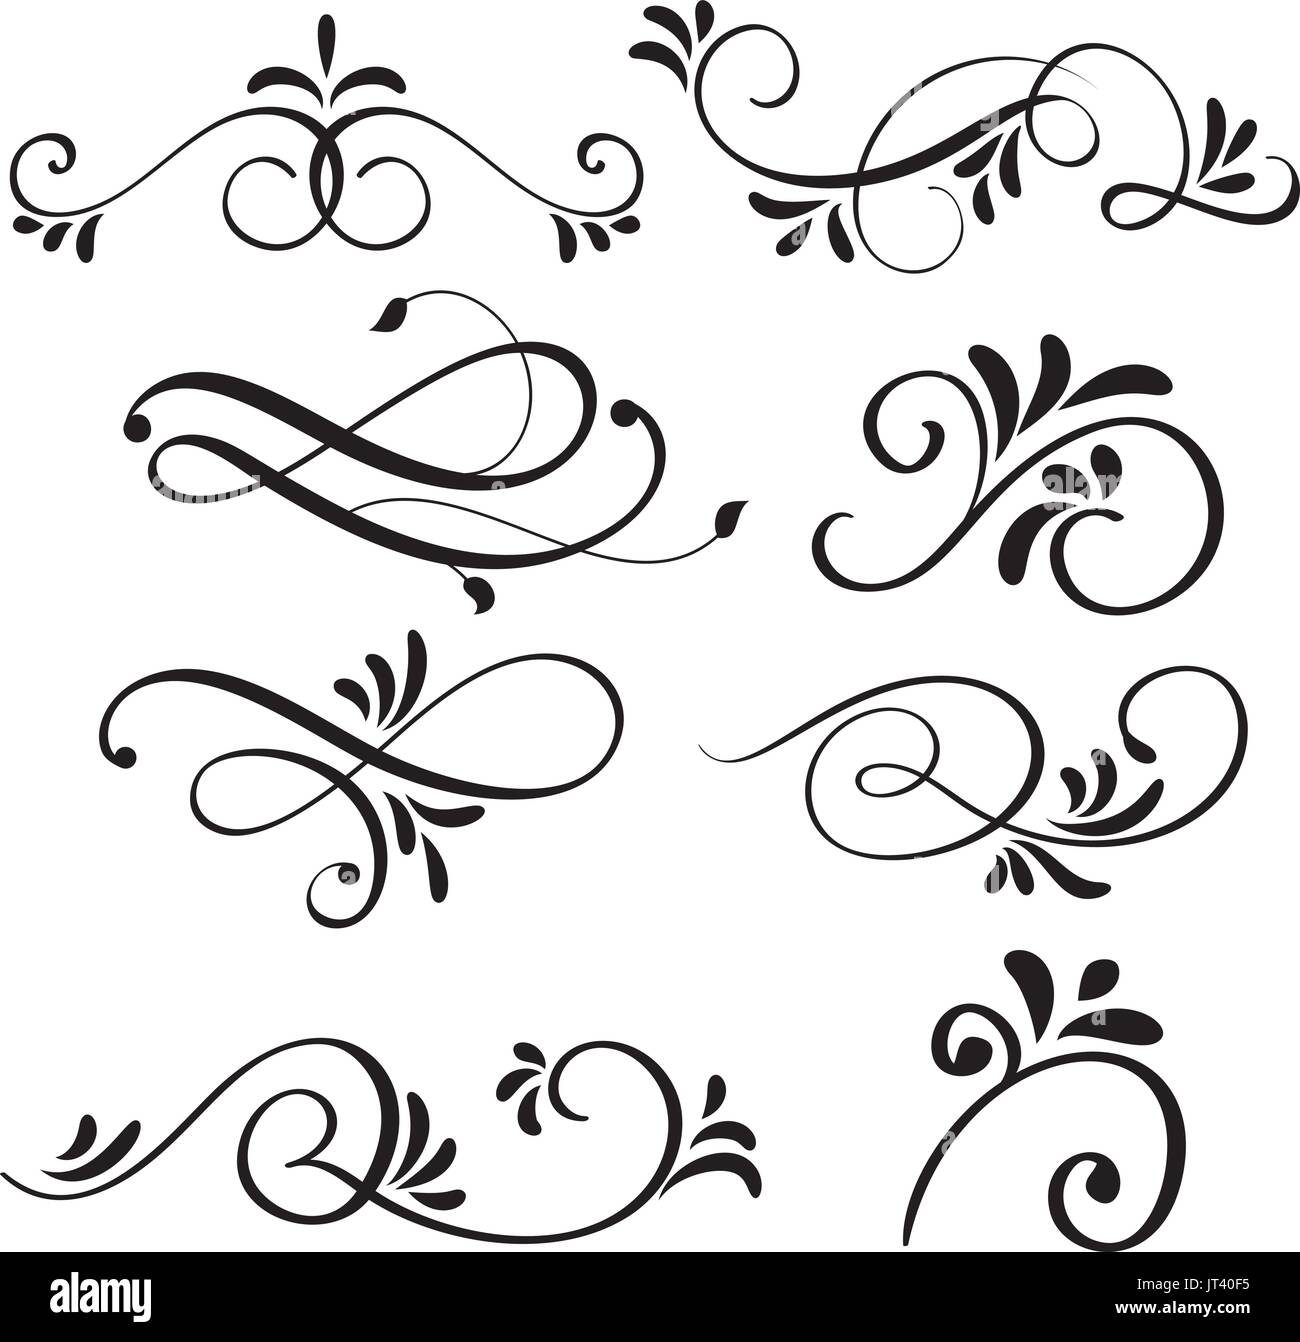 La calligrafia arte fiorire di vintage vortici decorativo per la progettazione. Illustrazione vettoriale EPS10 Illustrazione Vettoriale